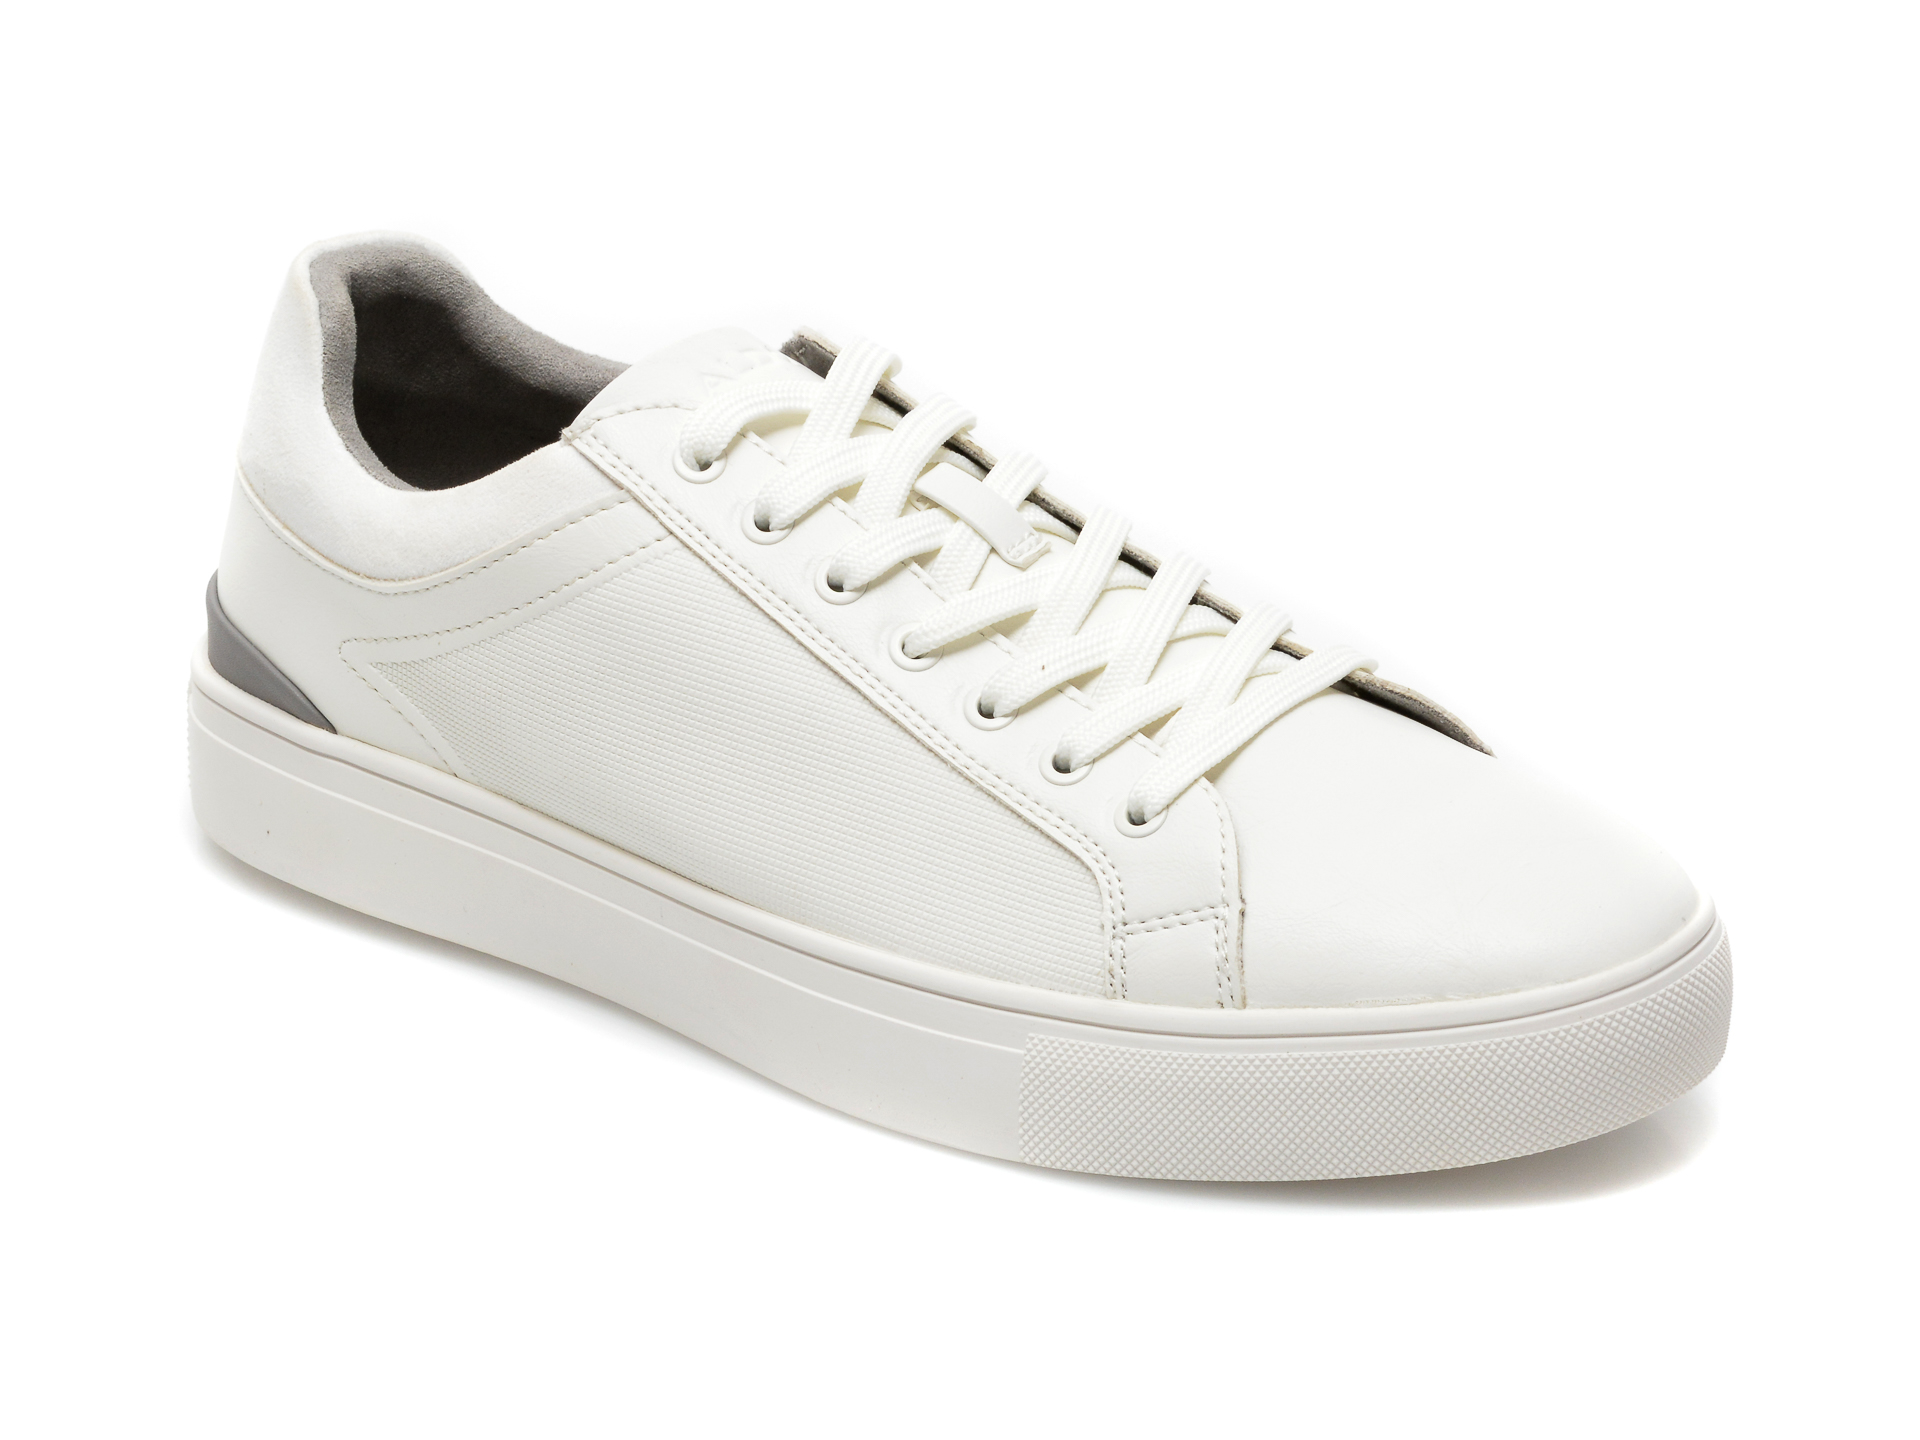 Pantofi sport ALDO albi, Eisingen100, din piele ecologica Aldo